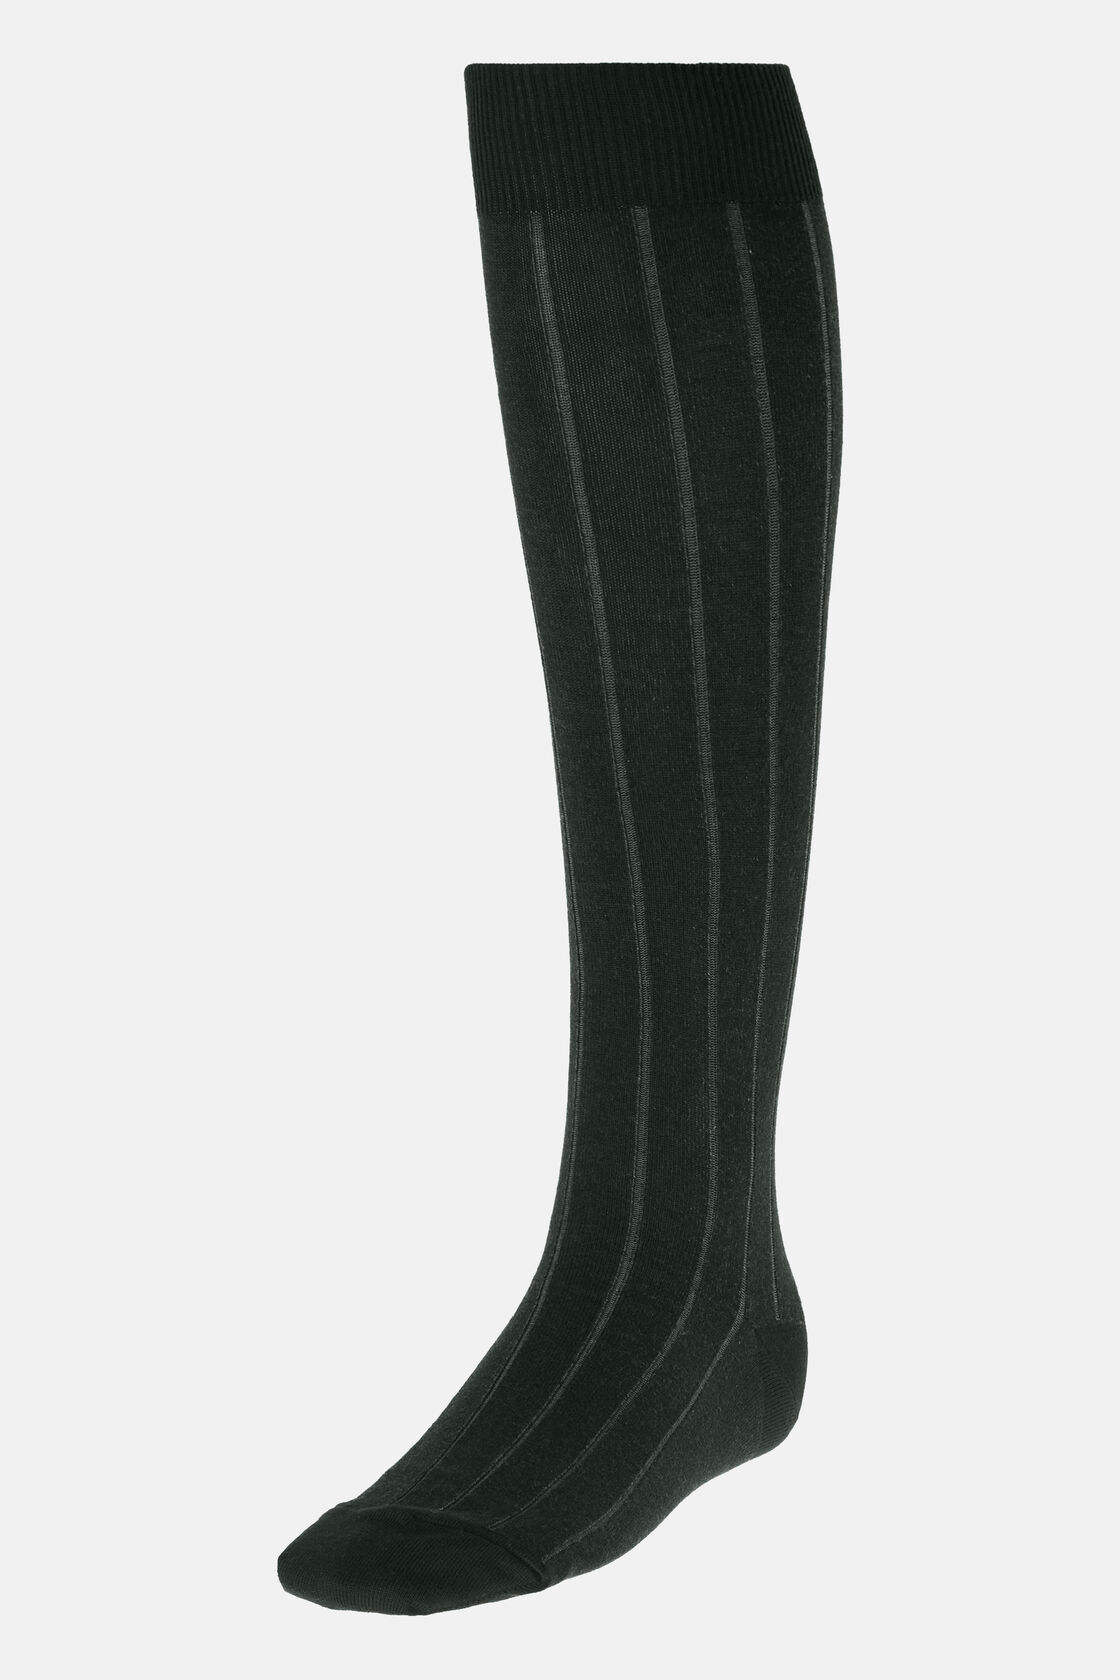 Βαμβακερές κάλτσες Vanise ριπ, Navy - Grey, hi-res